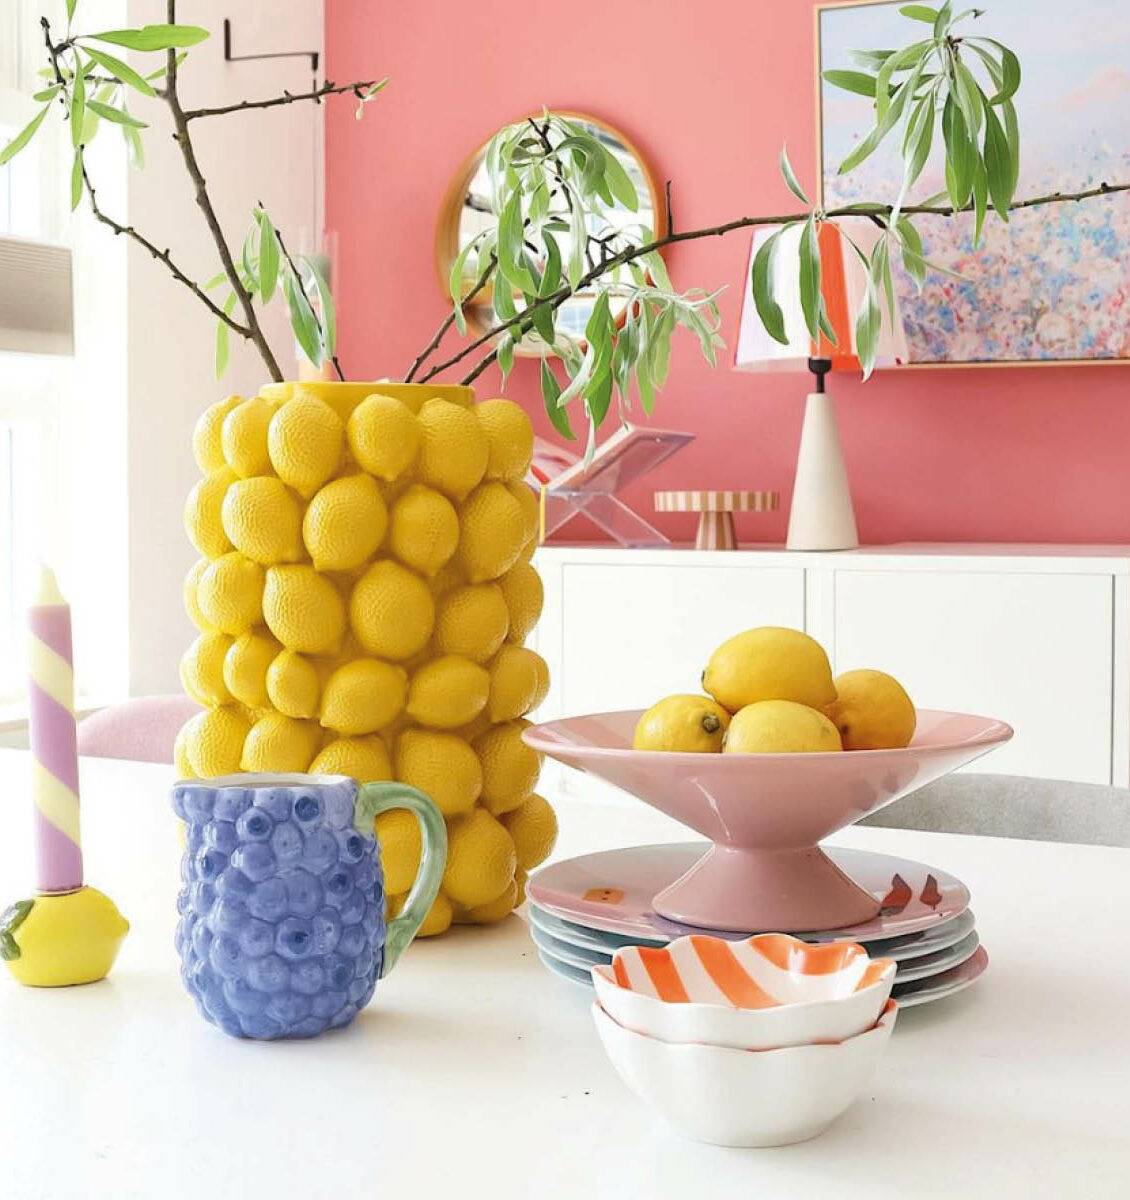 NL eettafel met kleurrijke, zomerse versieren en een schaal met citroenen